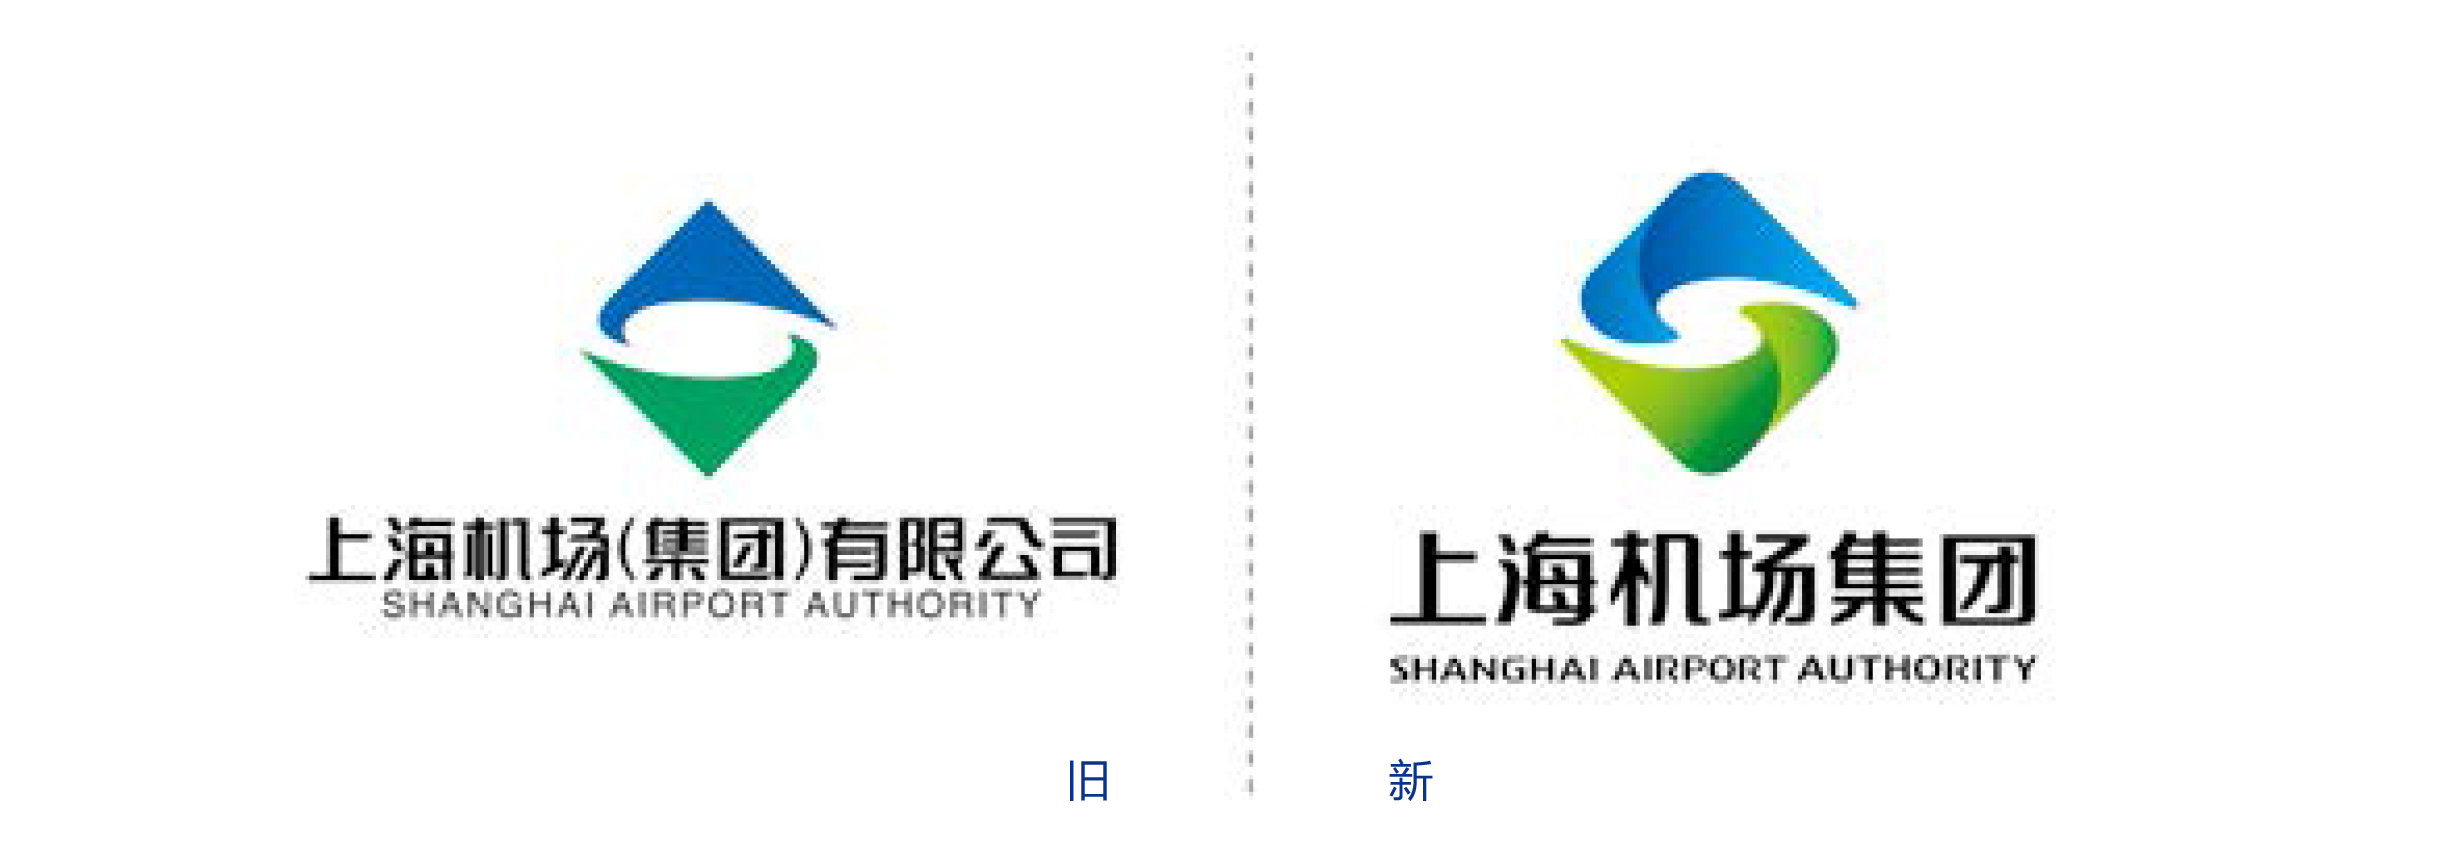 上海機場集團新舊logo對比